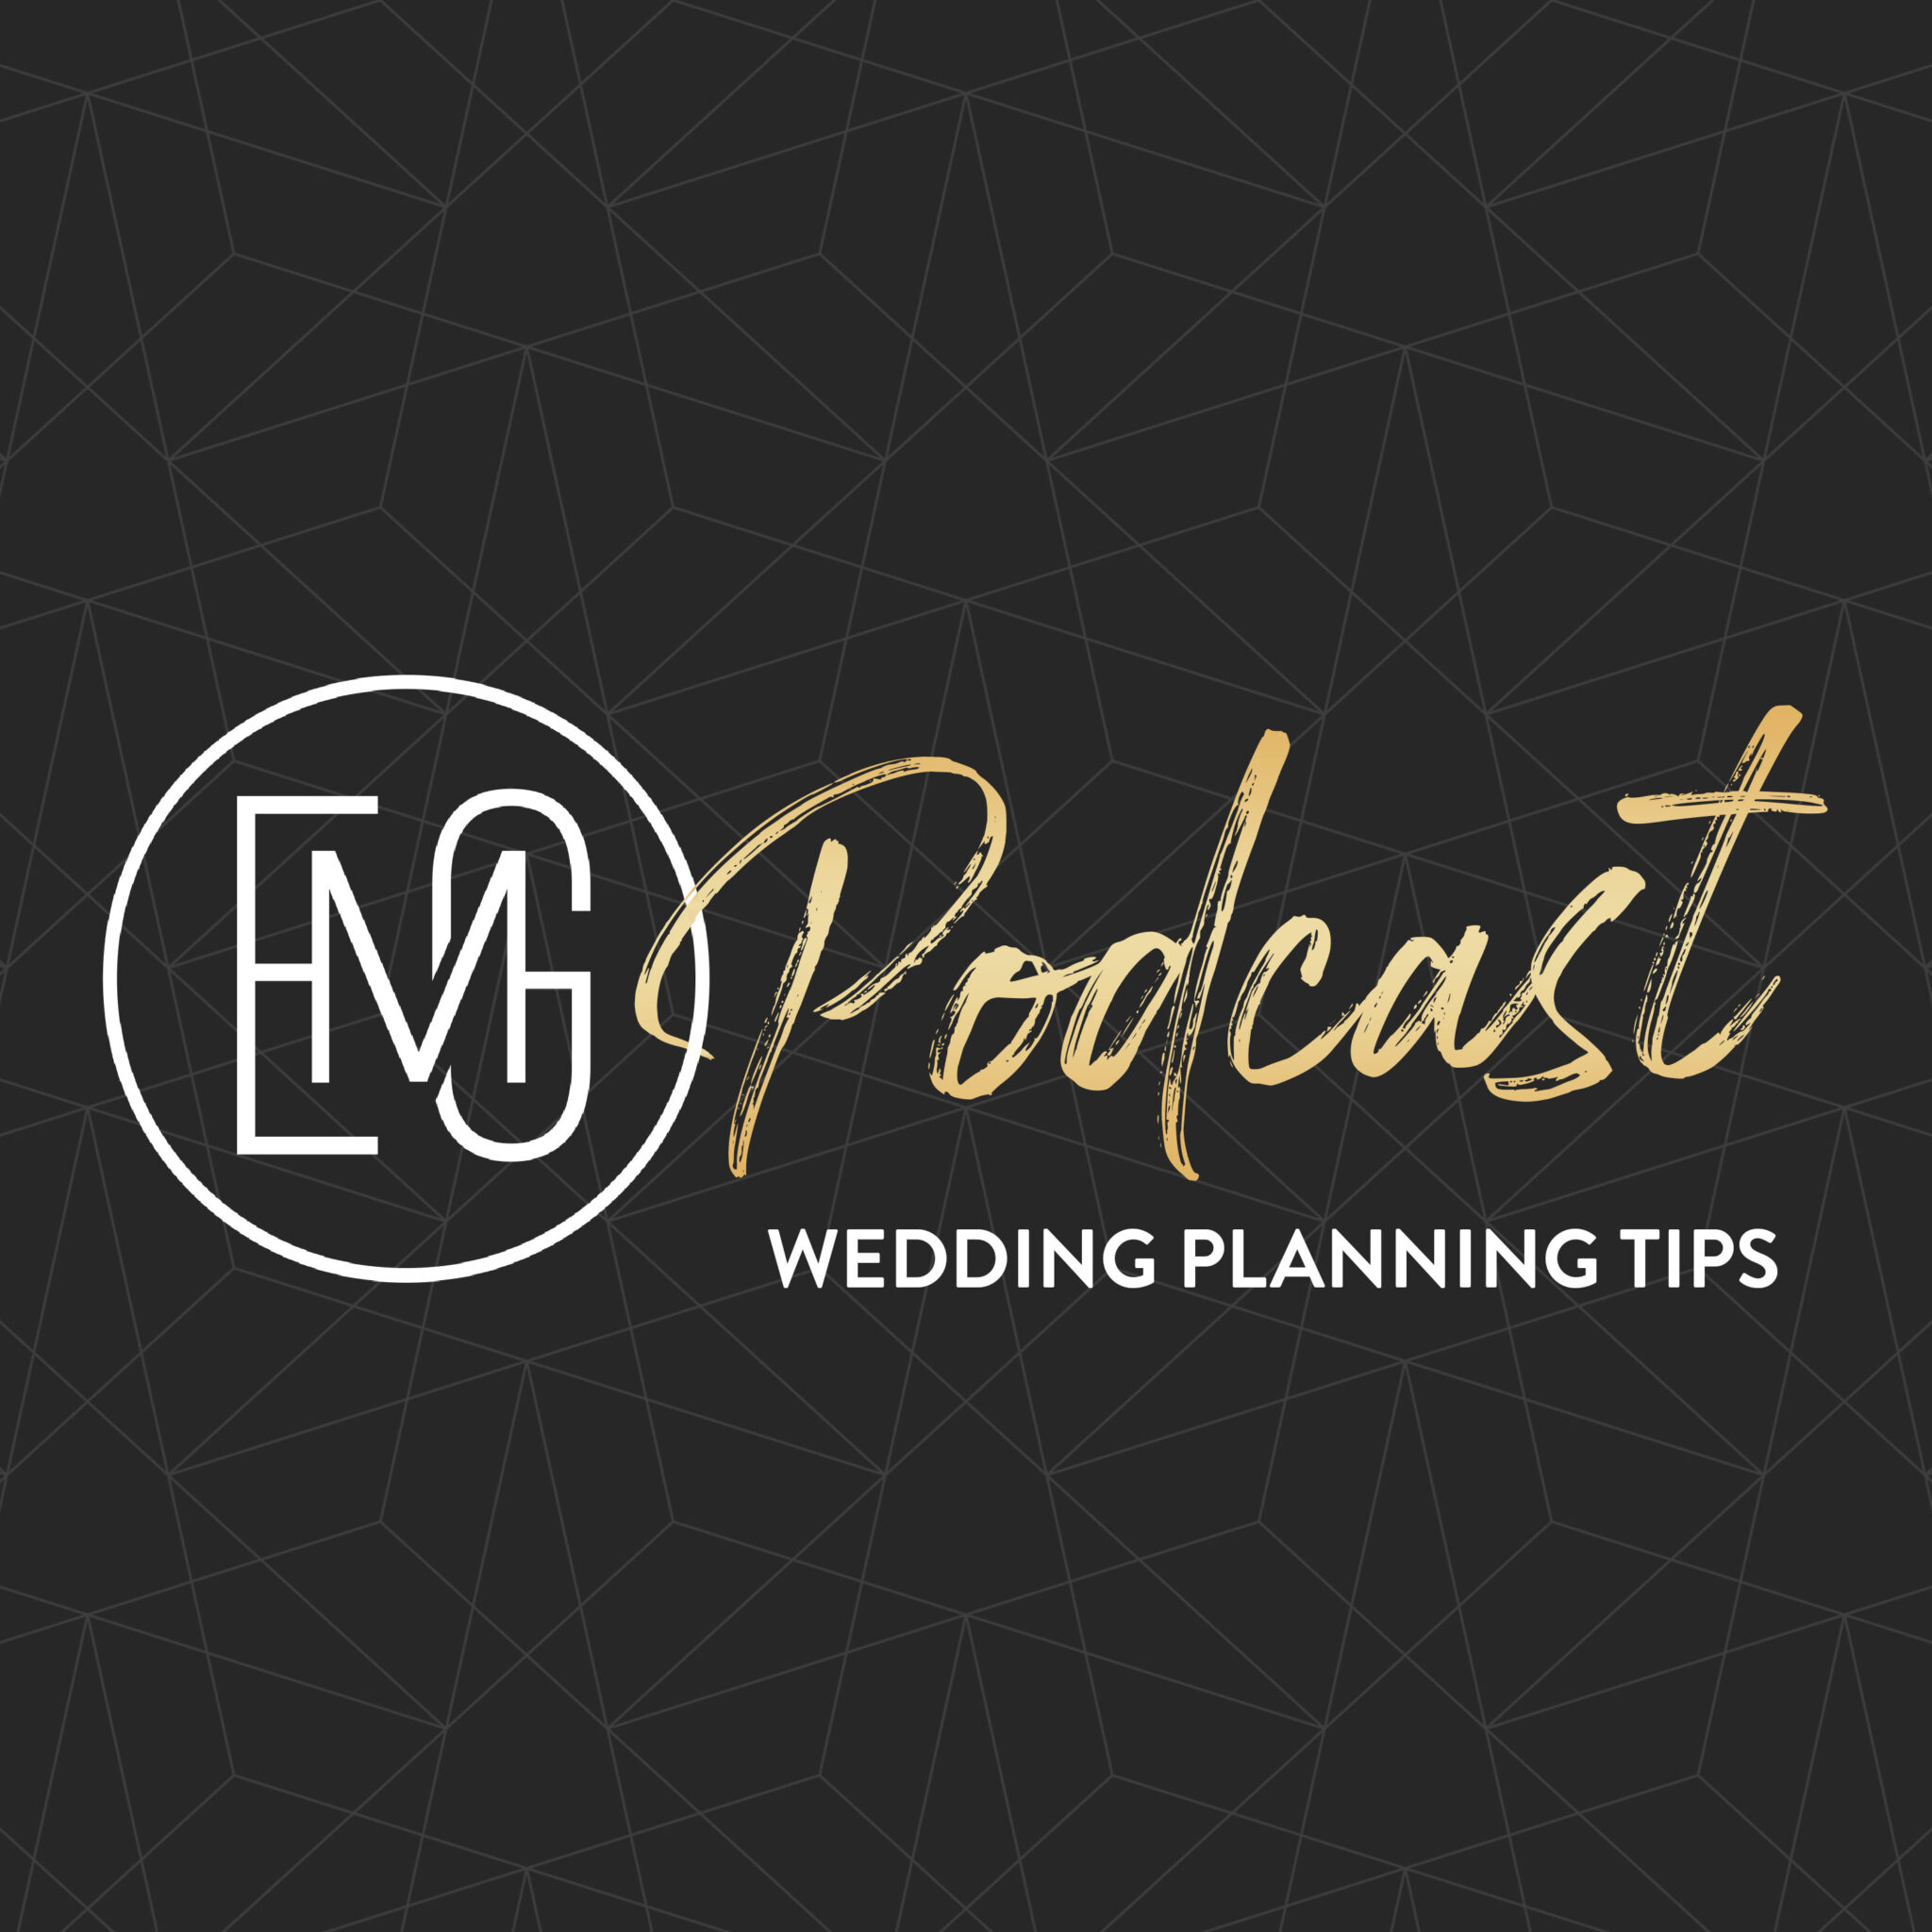 Planning Tips: Avoiding the Dreaded NJ Wedding